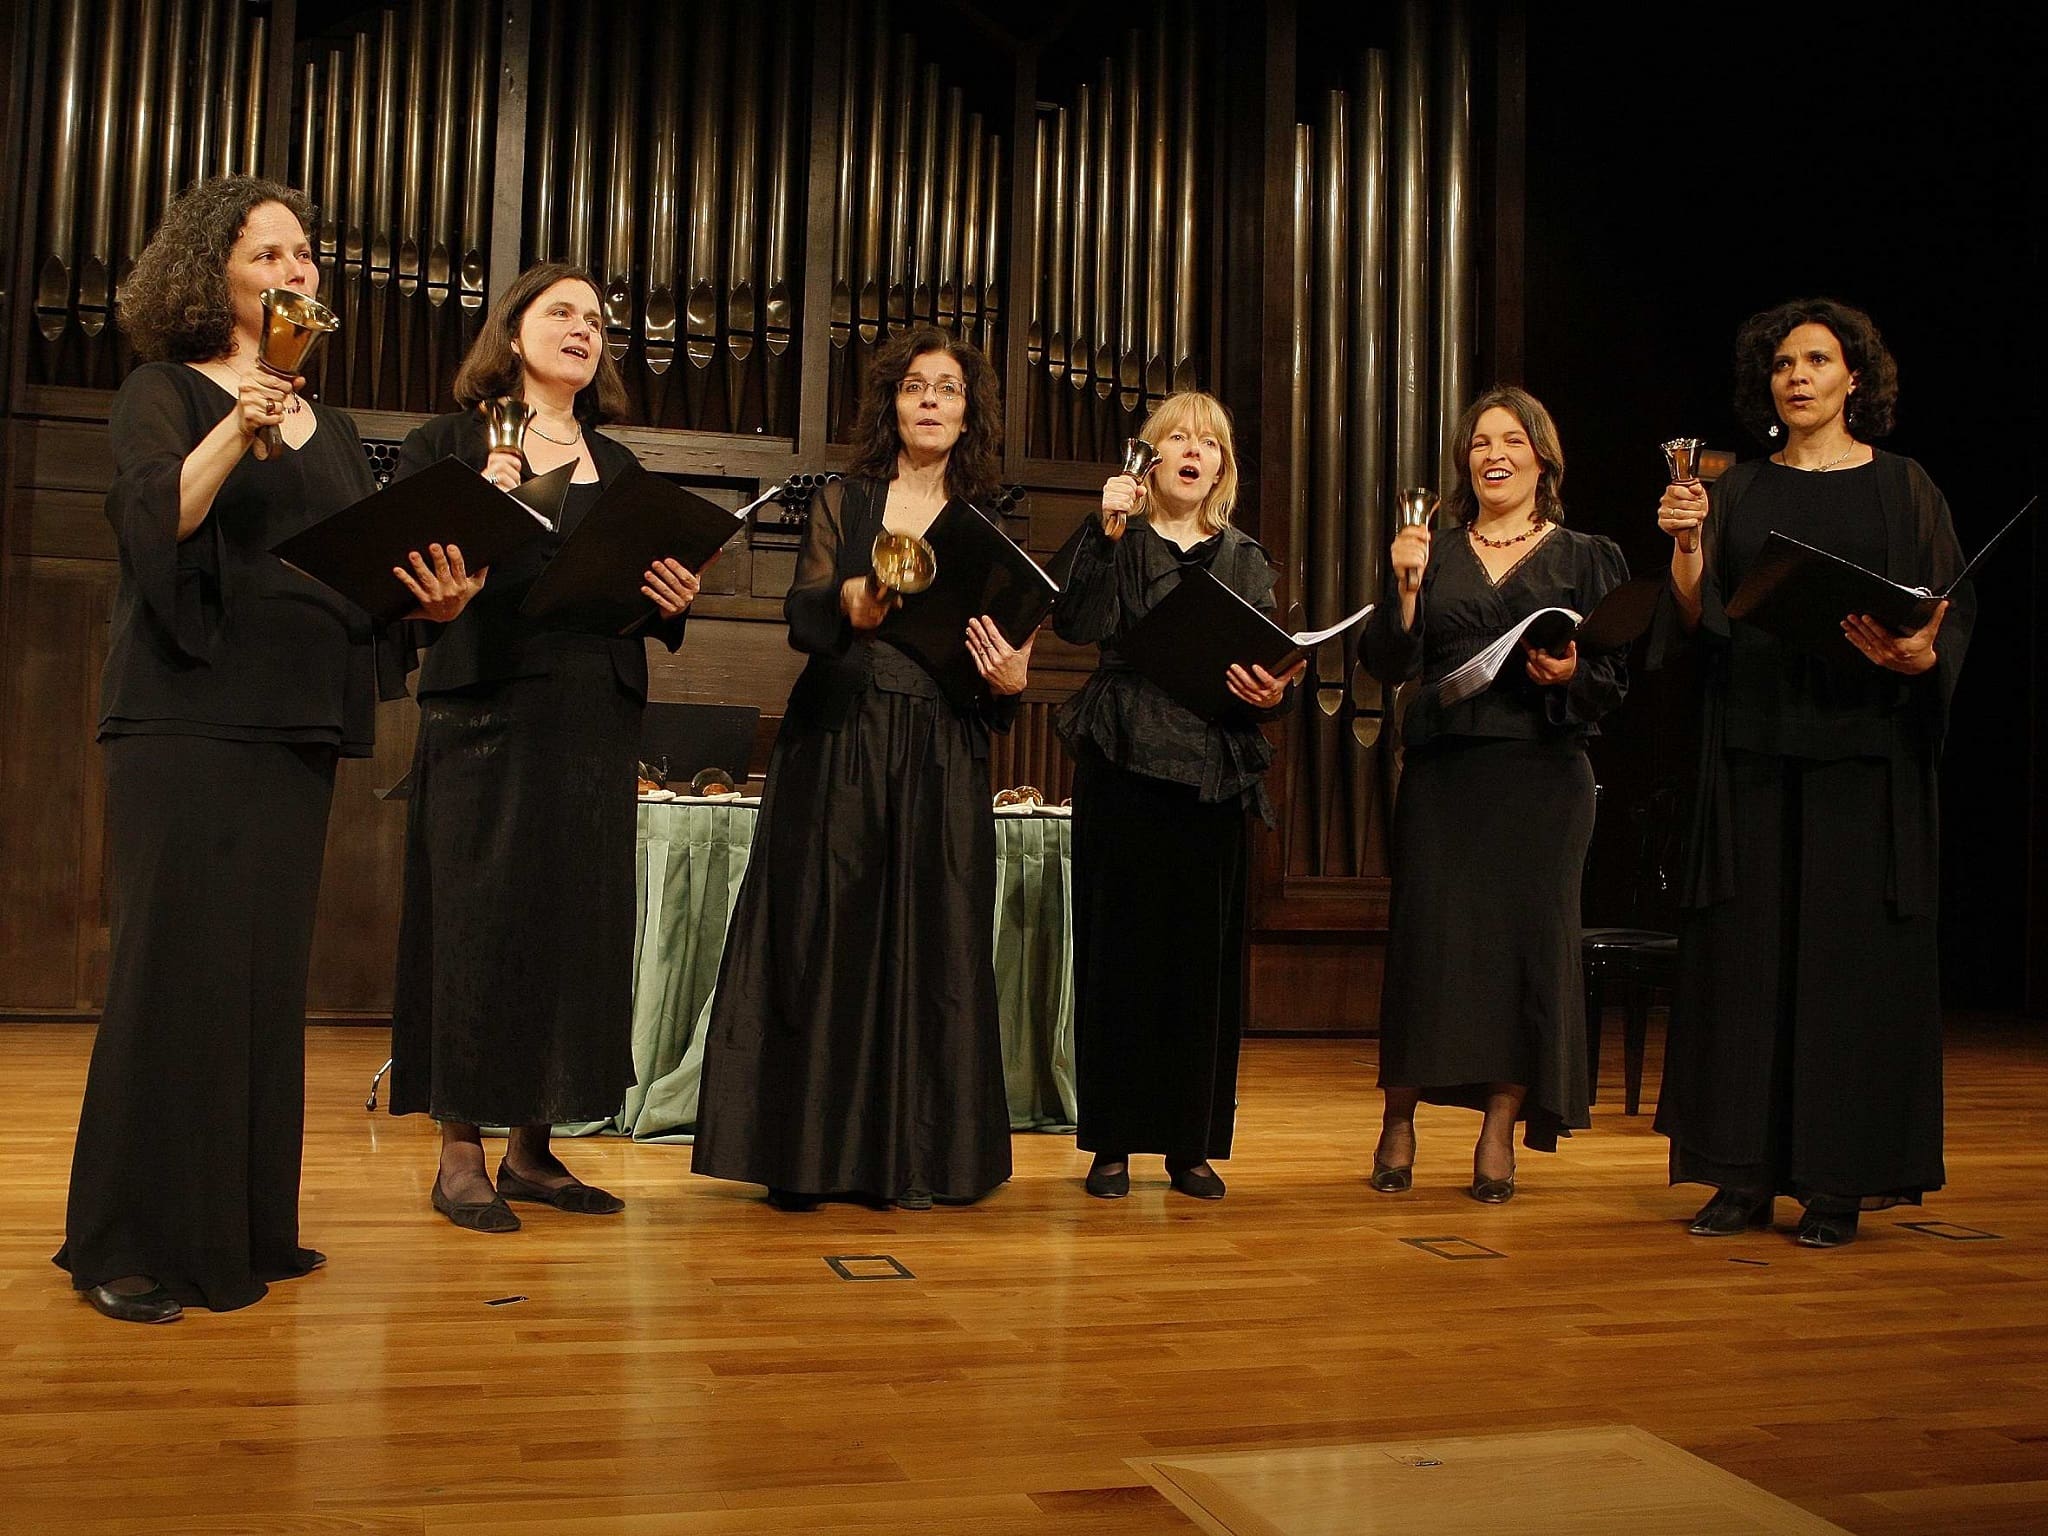 L'ensemble vocal féminin Discantus, qui se produira au festival, s'est imposé sur le plan international dans son répertoire.